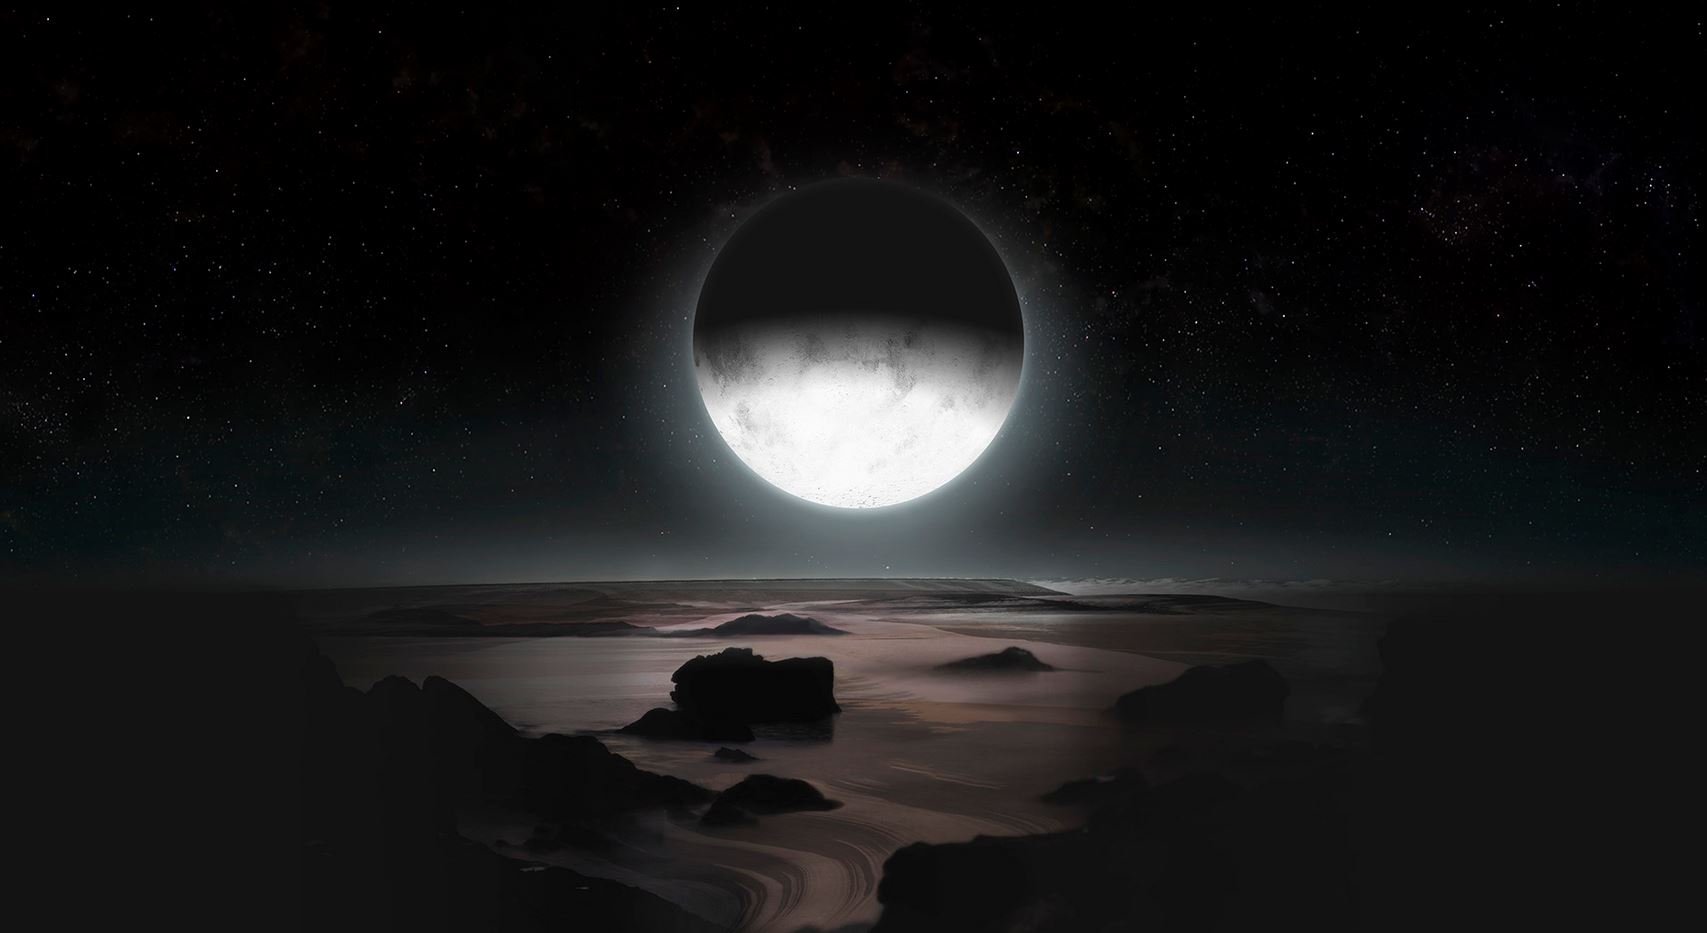 Pluto-in-Charon's-moonlight